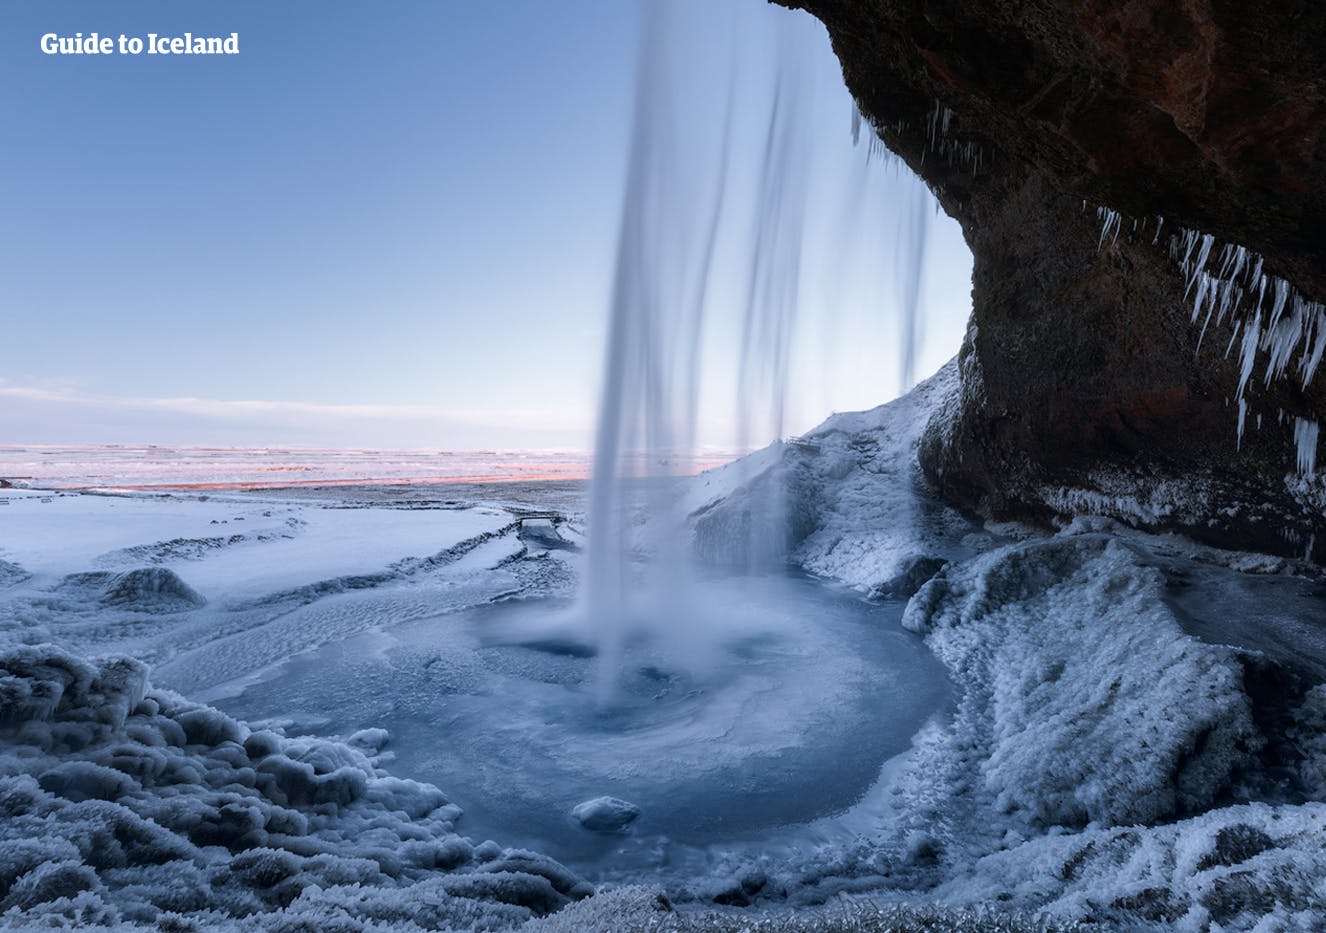 Frostklædt udsigt bag det fossende vand ved Seljalandsfoss-vandfaldet på Islands sydkyst